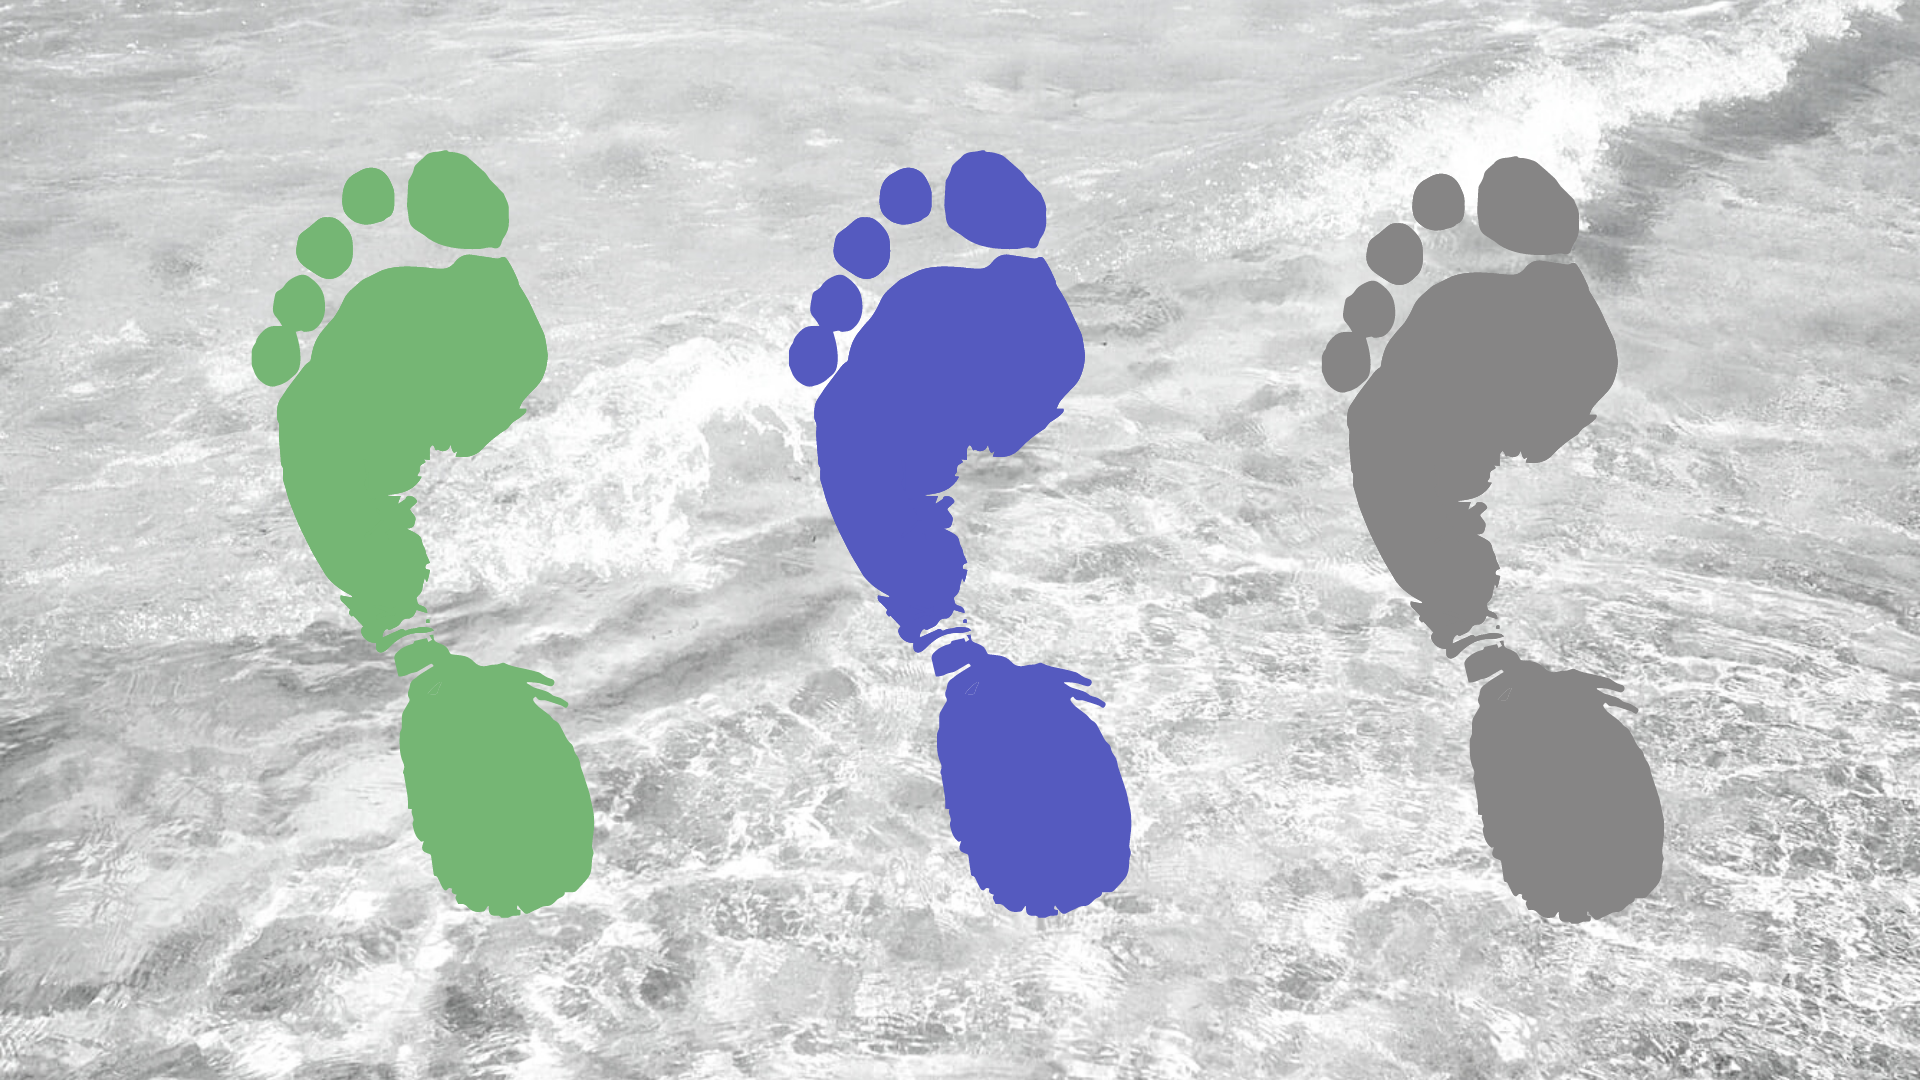 Footprint colors